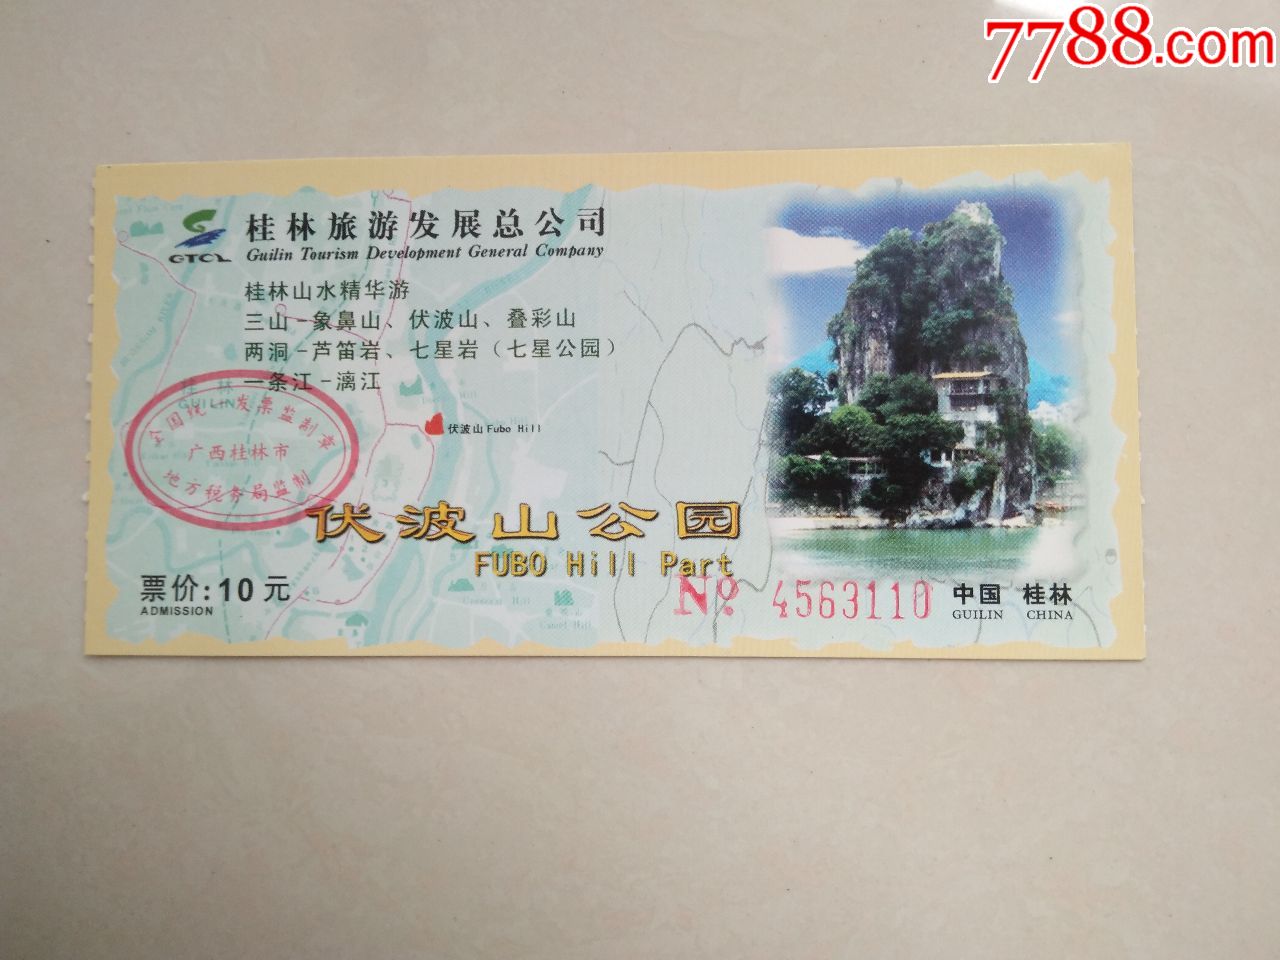 桂林旅游景点门票多少钱__桂林景点门票价格一览表